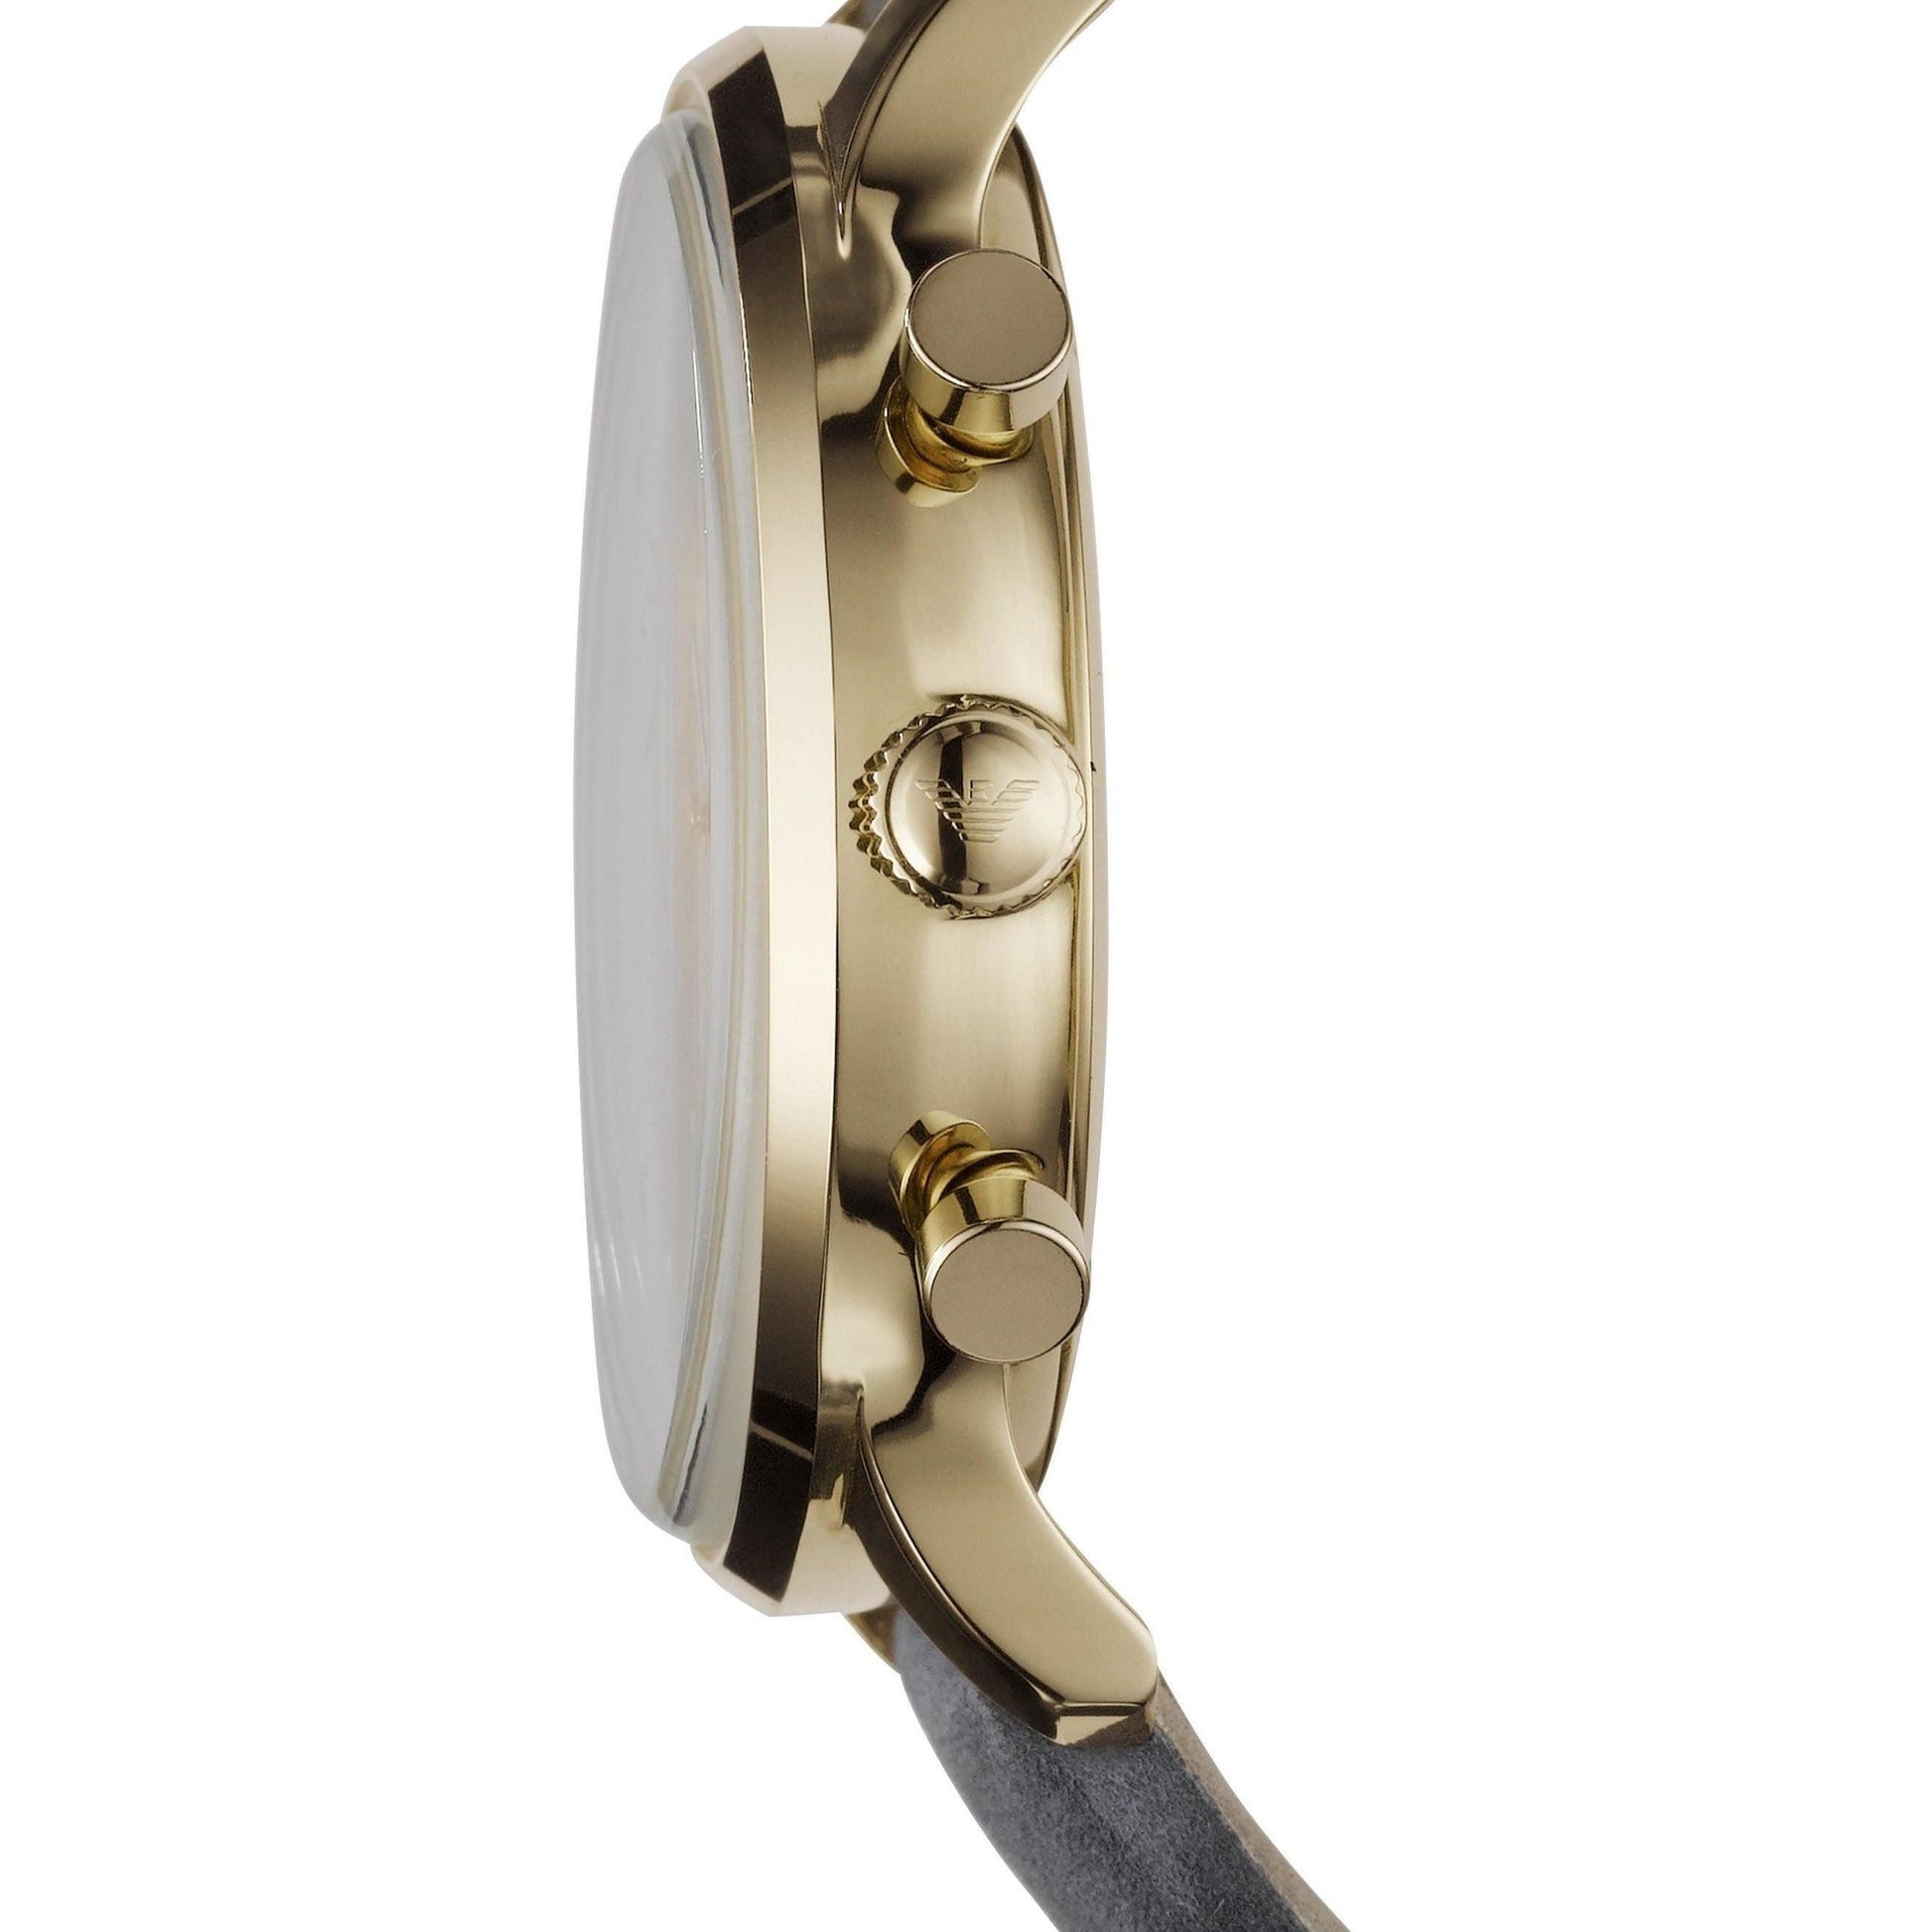 Emporio Armani Gianni White Dial Grey Leather Strap Watch For Men - AR0386